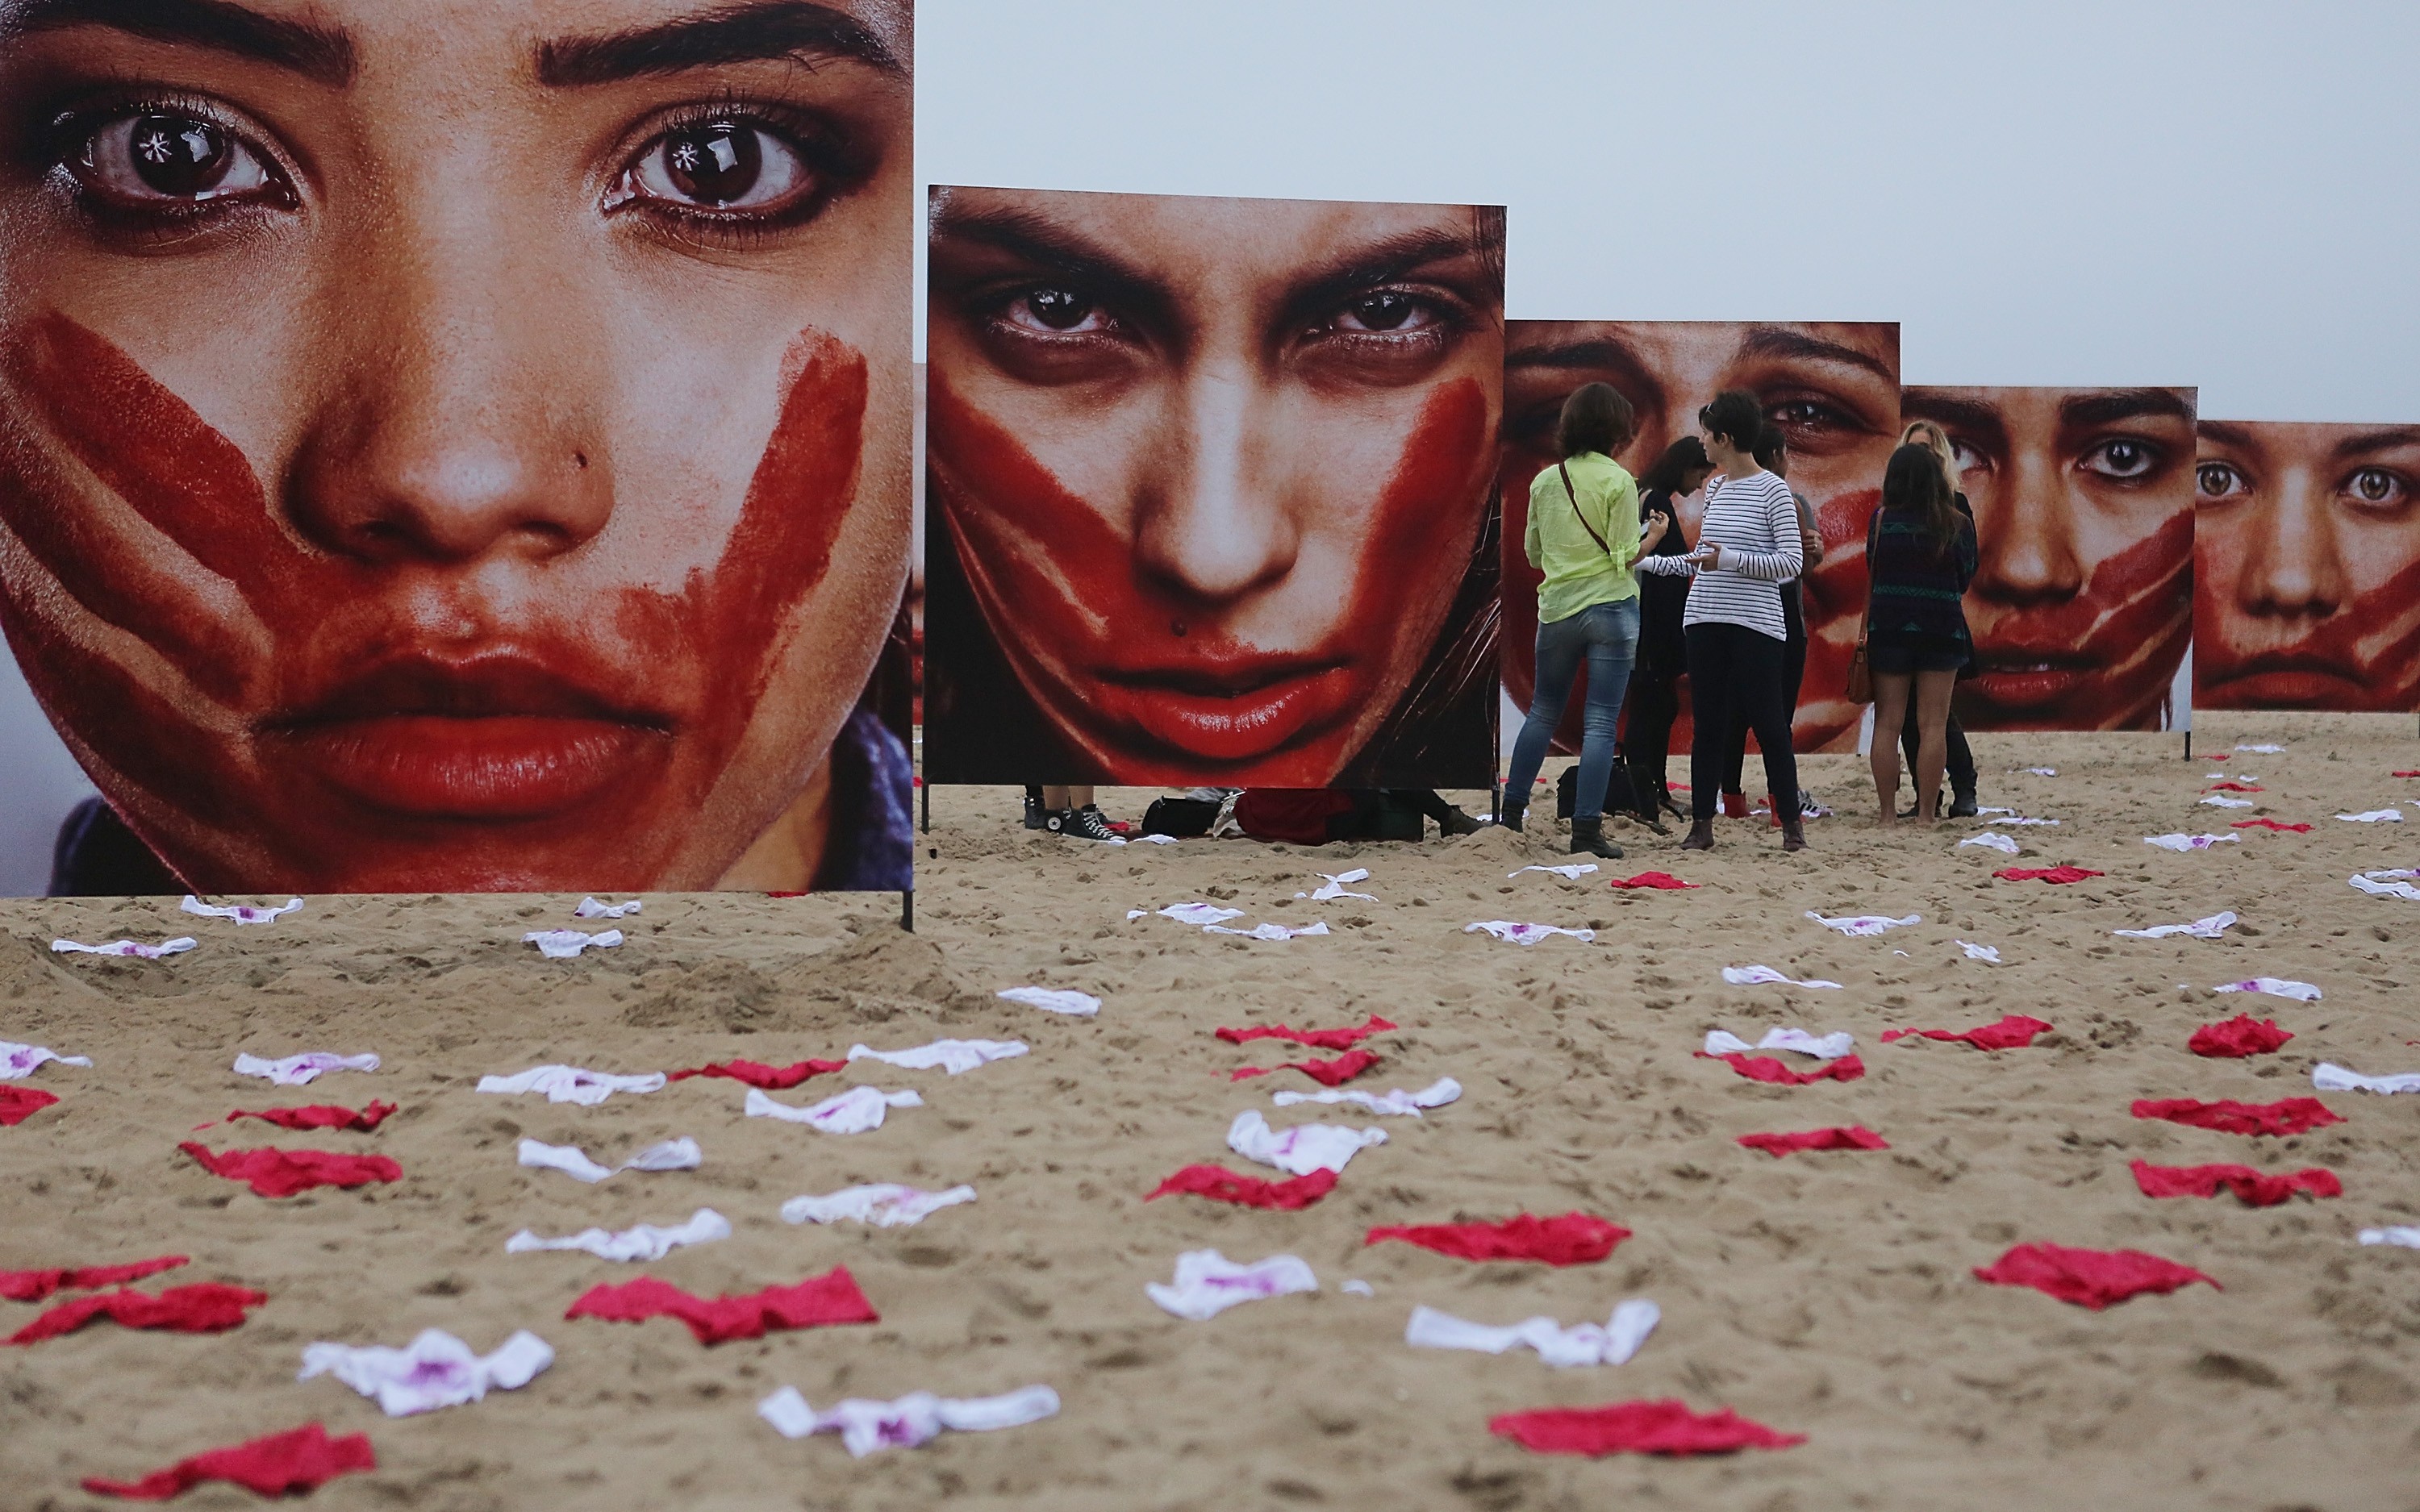 Fotografias de Marcio Freitas expostas na praia de Copacabana (Foto: Getty Images)